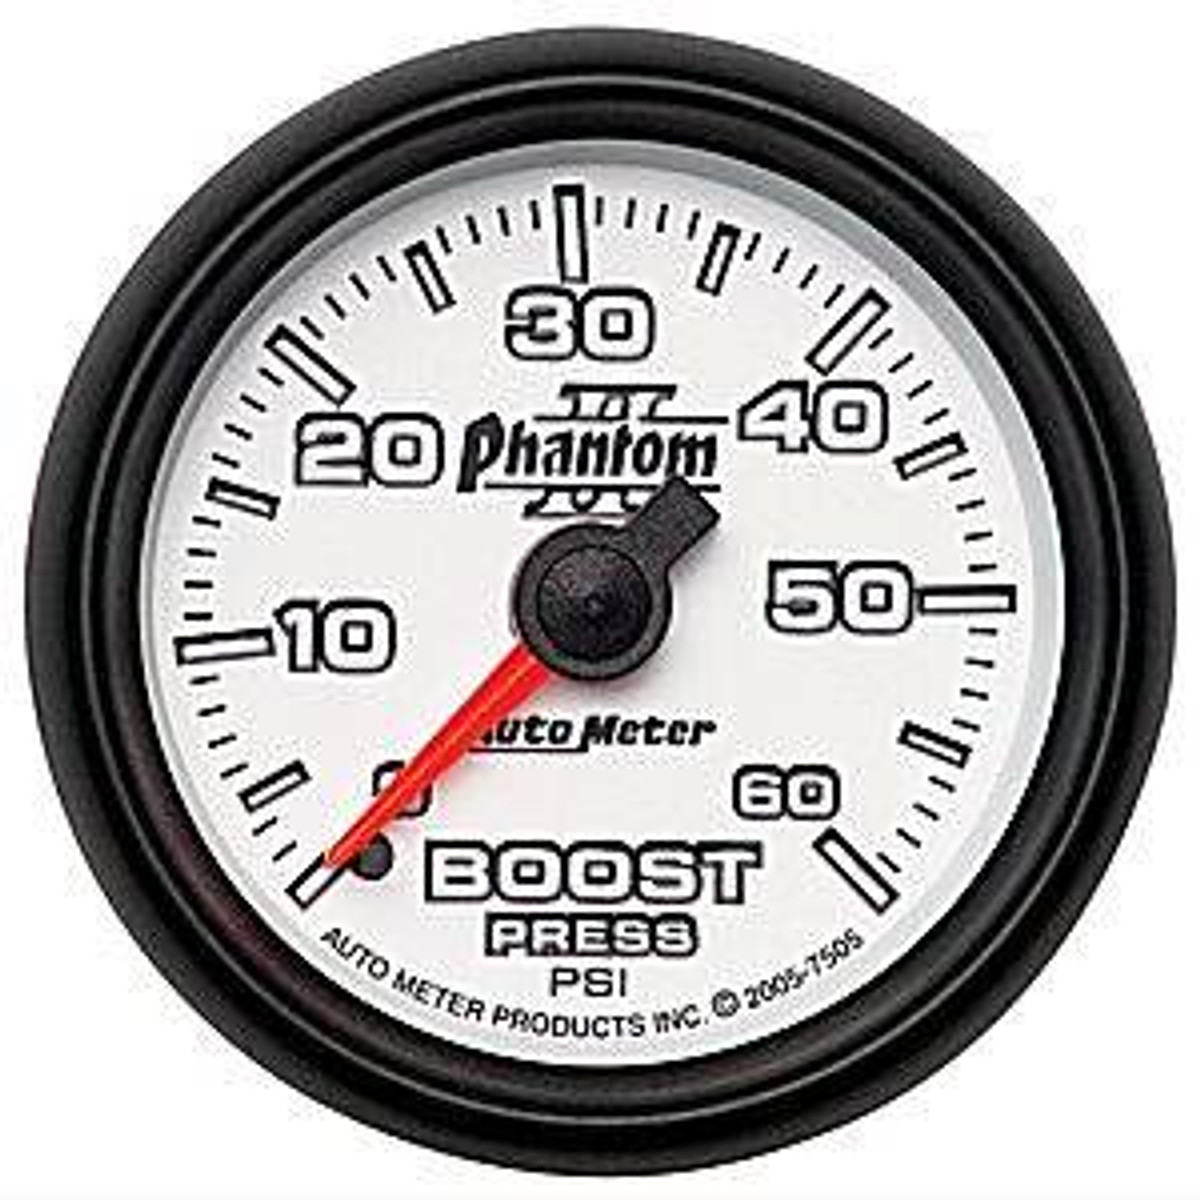 Auto Meter Phantom II Boost Gauge 60 psi 7505